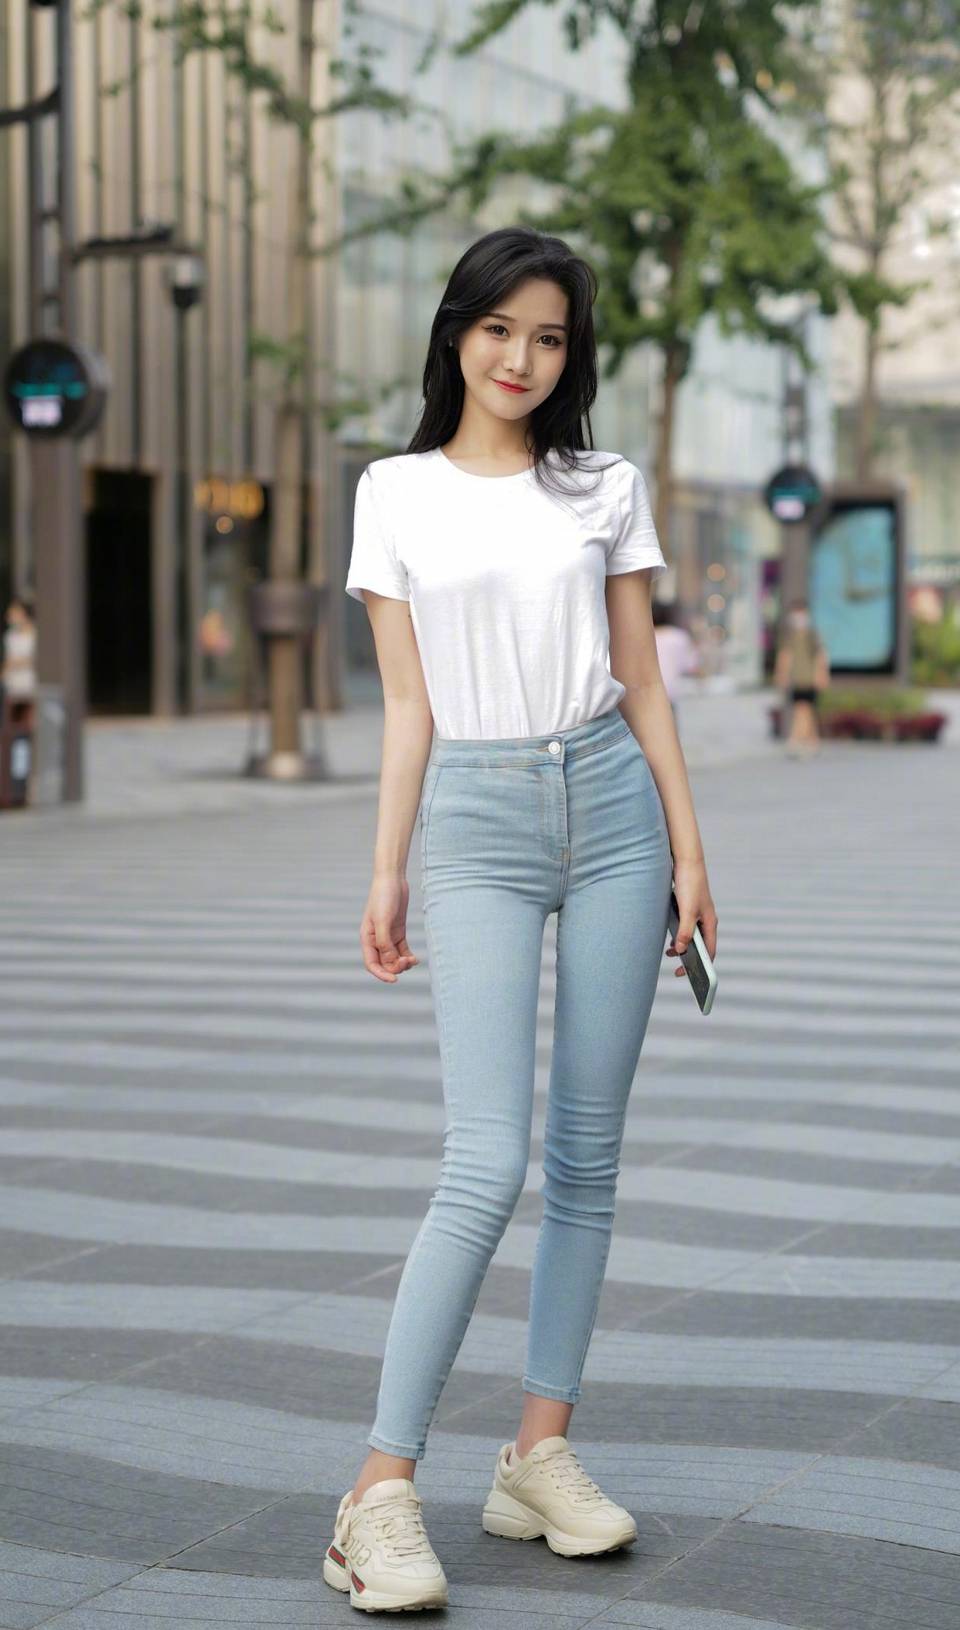 街拍,小姐姐穿一件白色短袖t恤,青春靓丽_牛仔裤